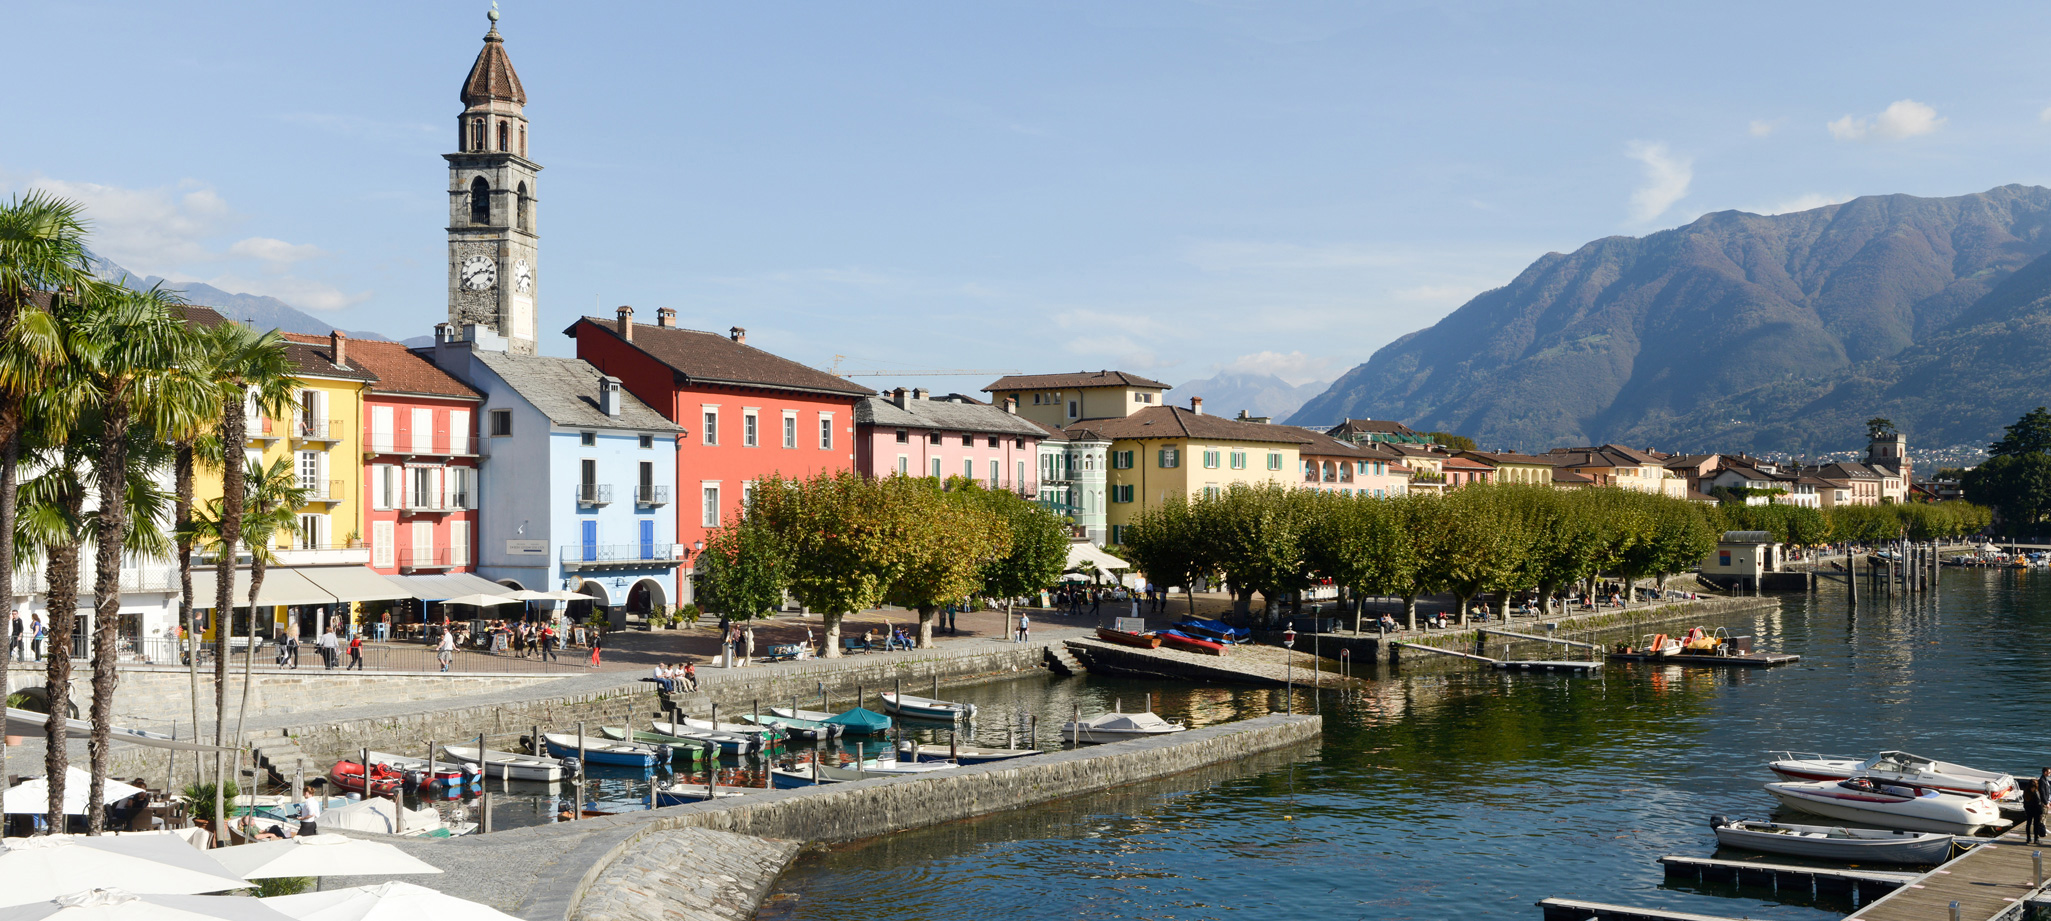 Benvenuti a  Locarno Ascona Lugano. Le nostre Boutiques e Cafés